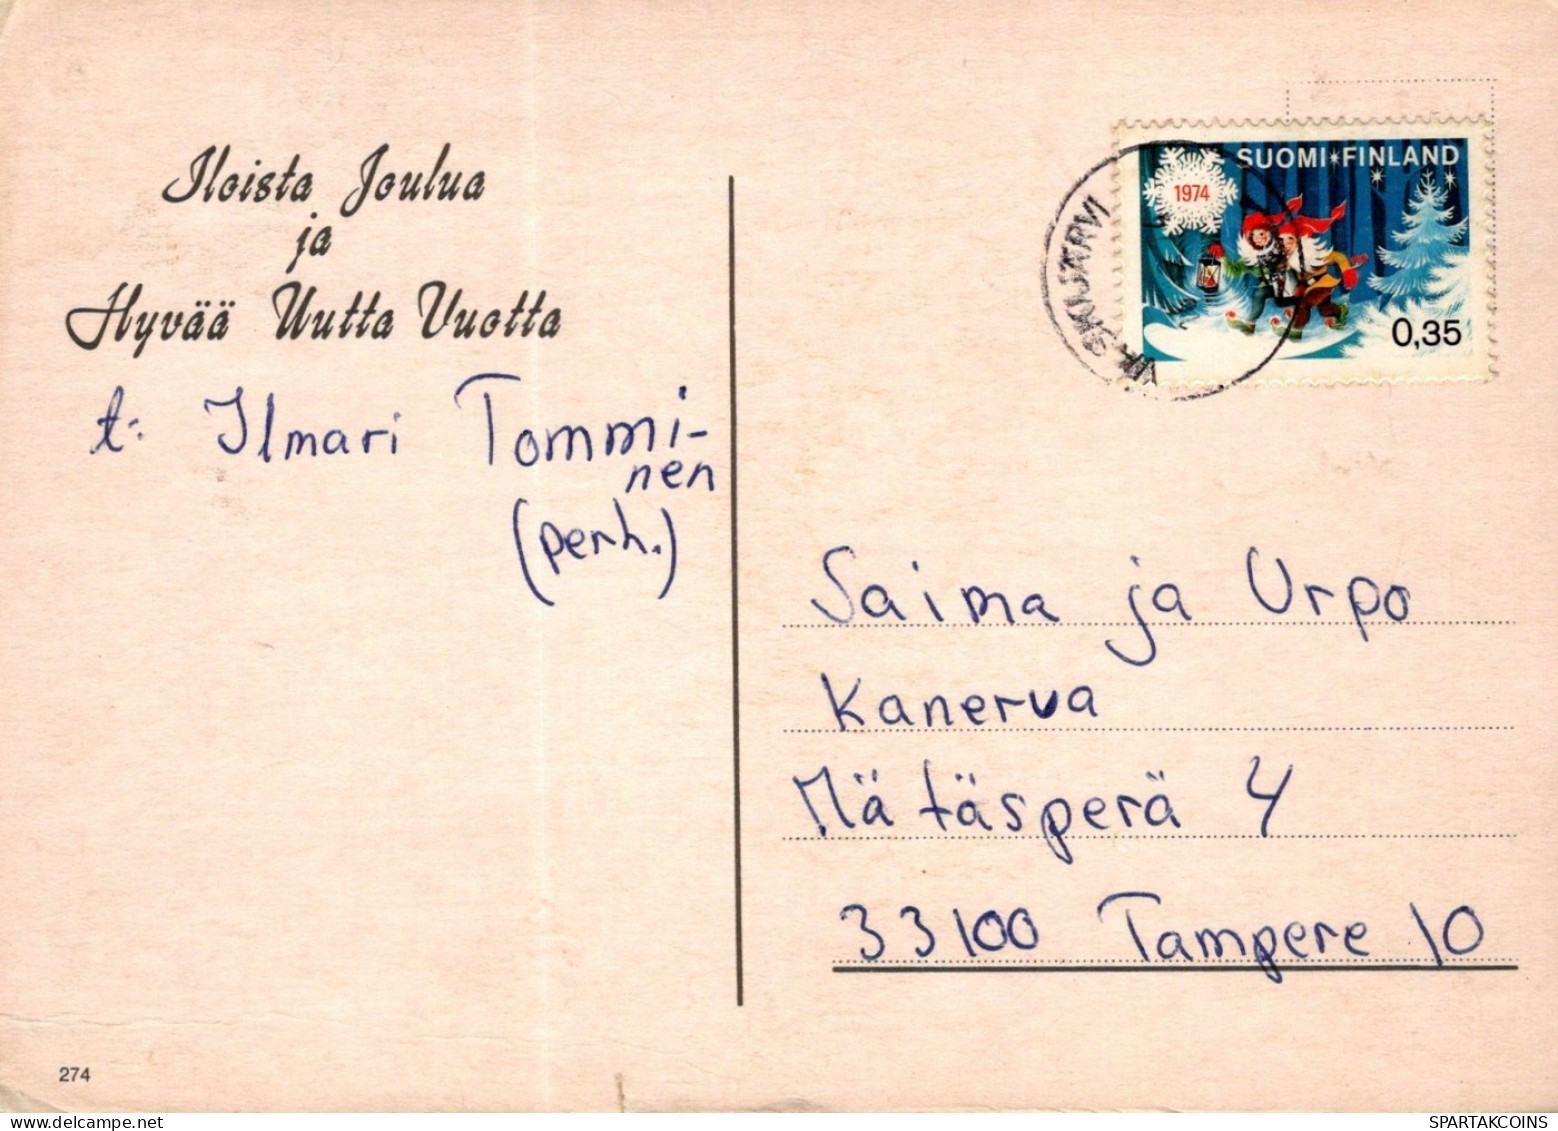 ANGE NOËL Vintage Carte Postale CPSM #PAH425.FR - Anges